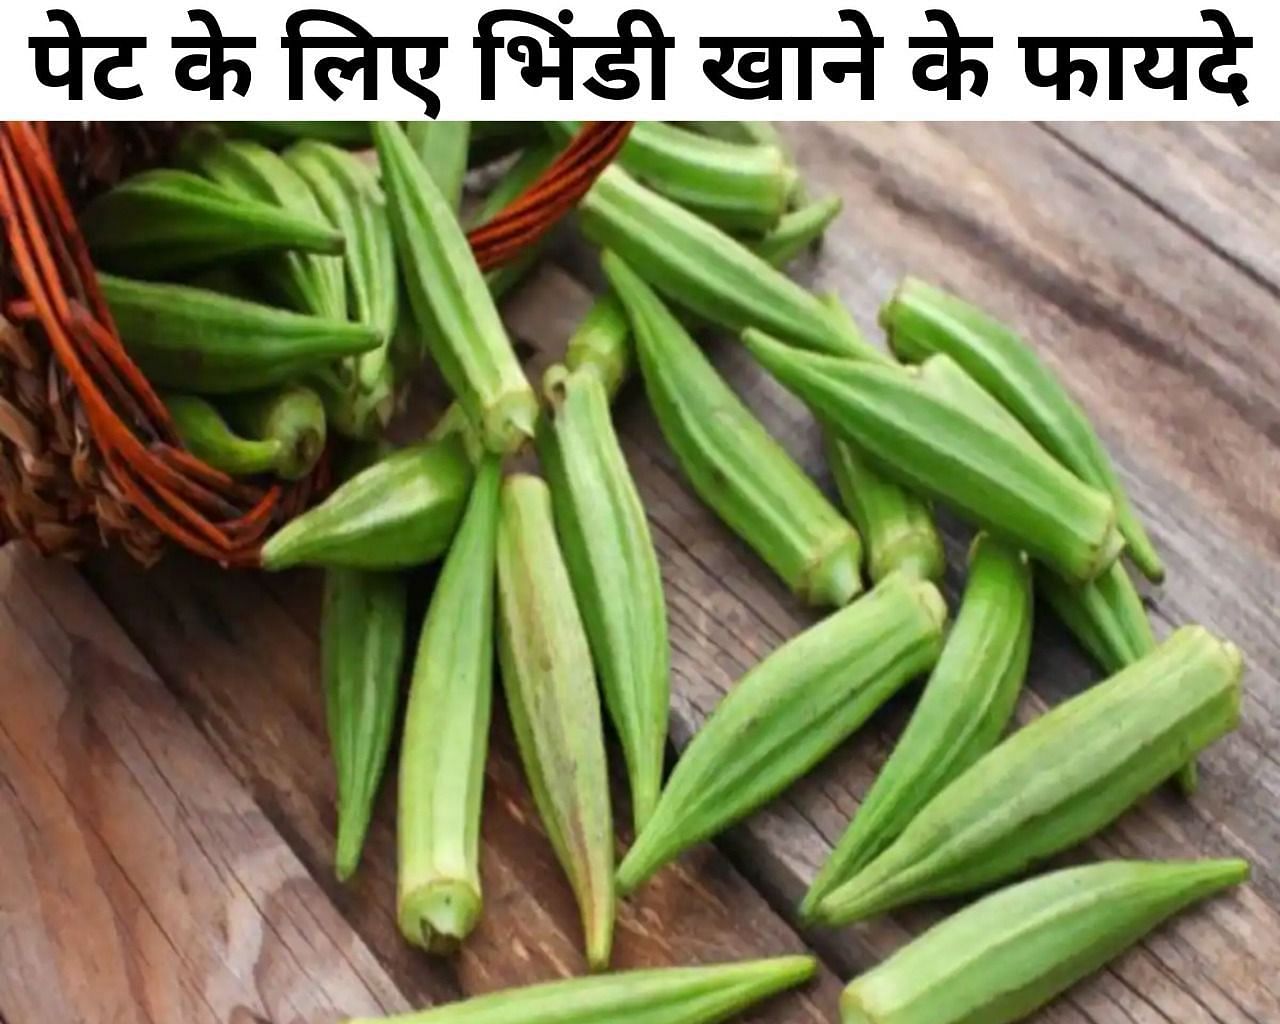 पेट के लिए भिंडी खाने के फायदे (फोटो - sportskeeda hindi)